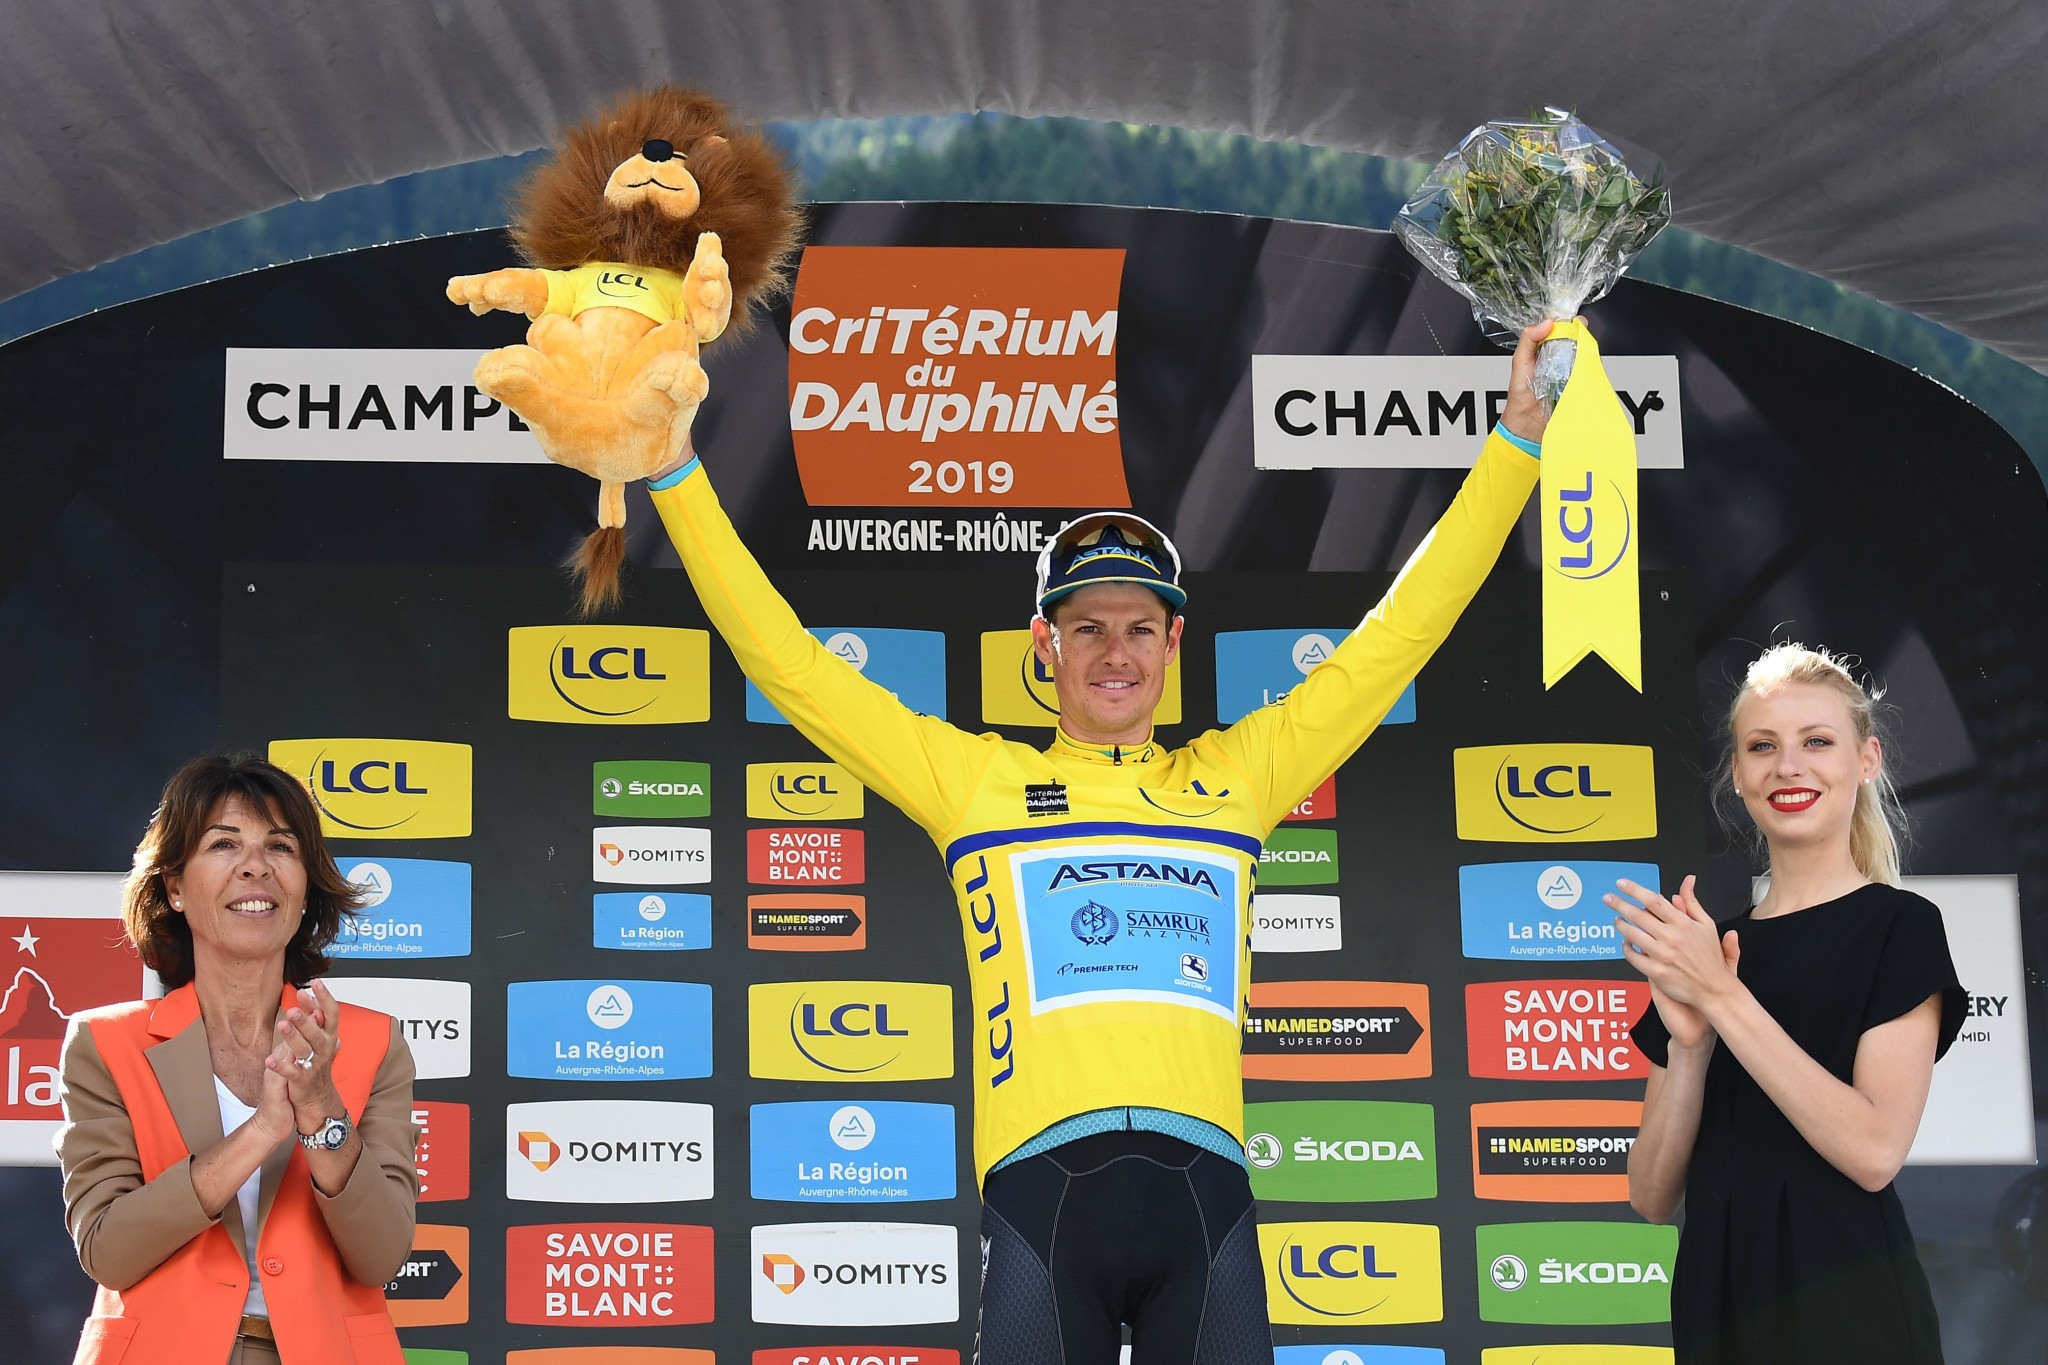 Danish dominate as Fuglsang secures second Critérium du Dauphiné title